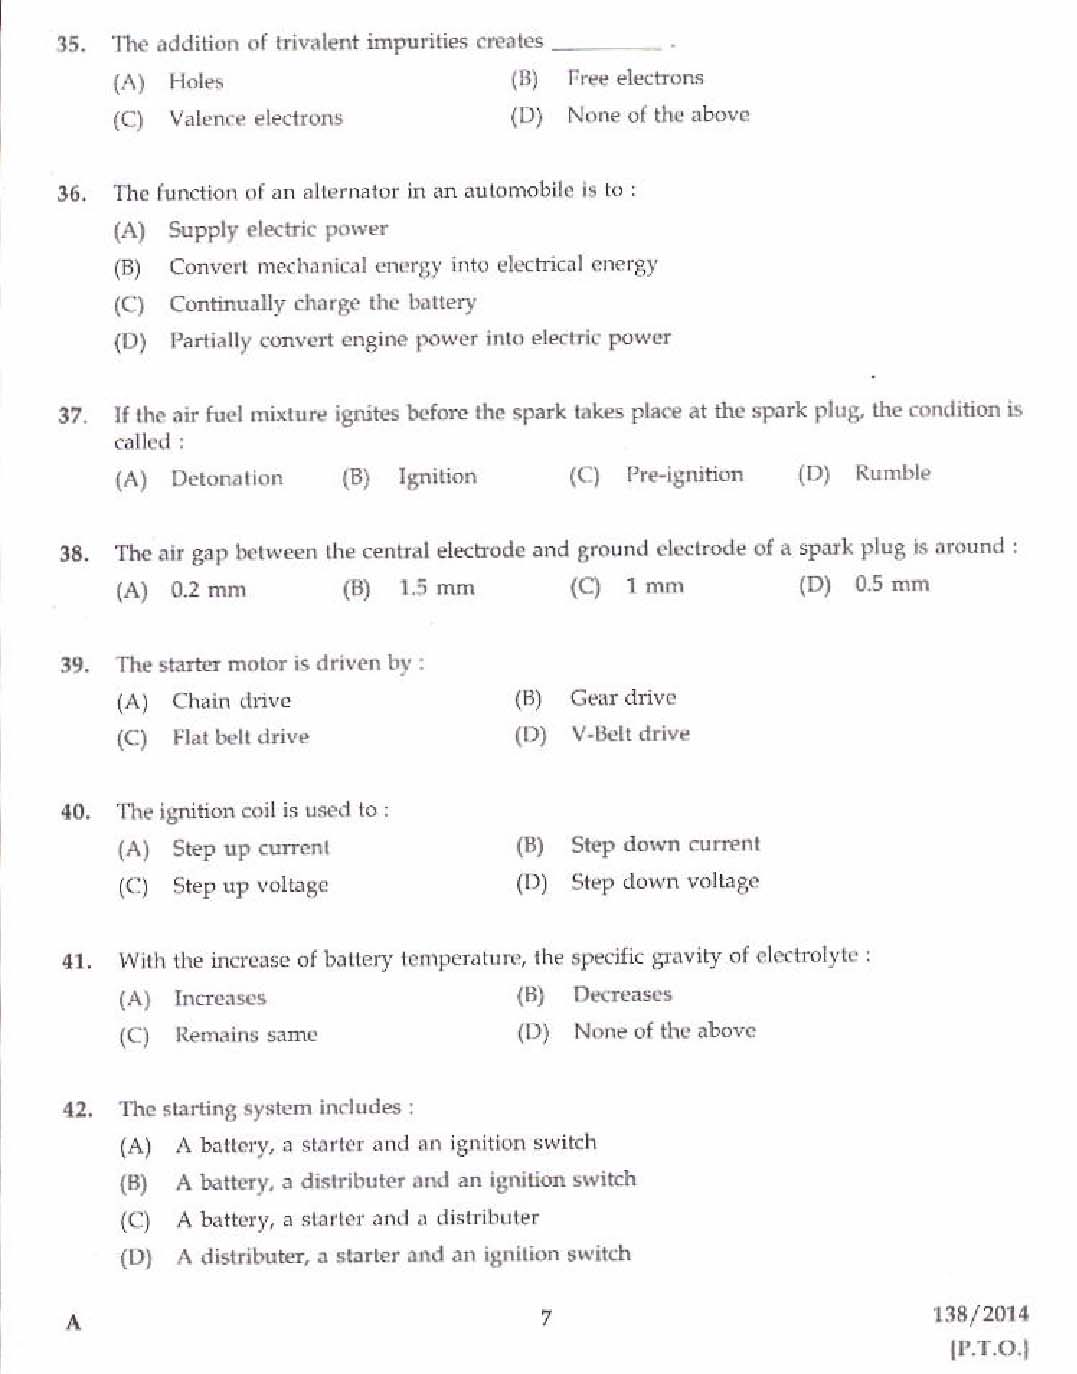 Kerala PSC Junior Instructor Exam Question Paper Code 1382014 5